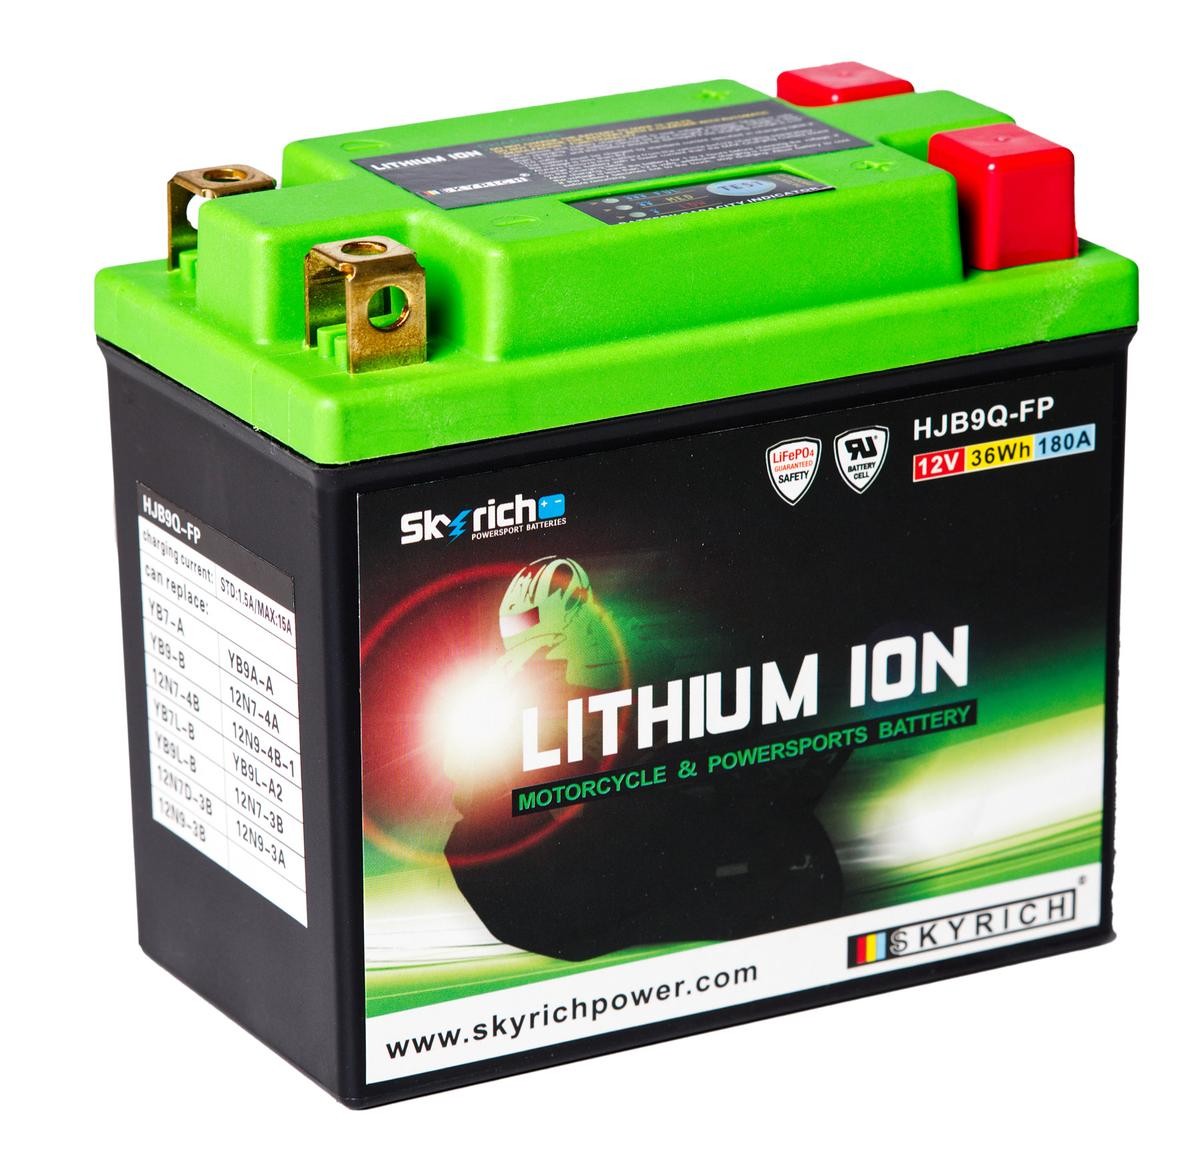 CAGIVA 125 Batterie 12V 3Ah 180A N Li-Ionen-Batterie SKYRICH LITHIUM ION HJB9Q-FP